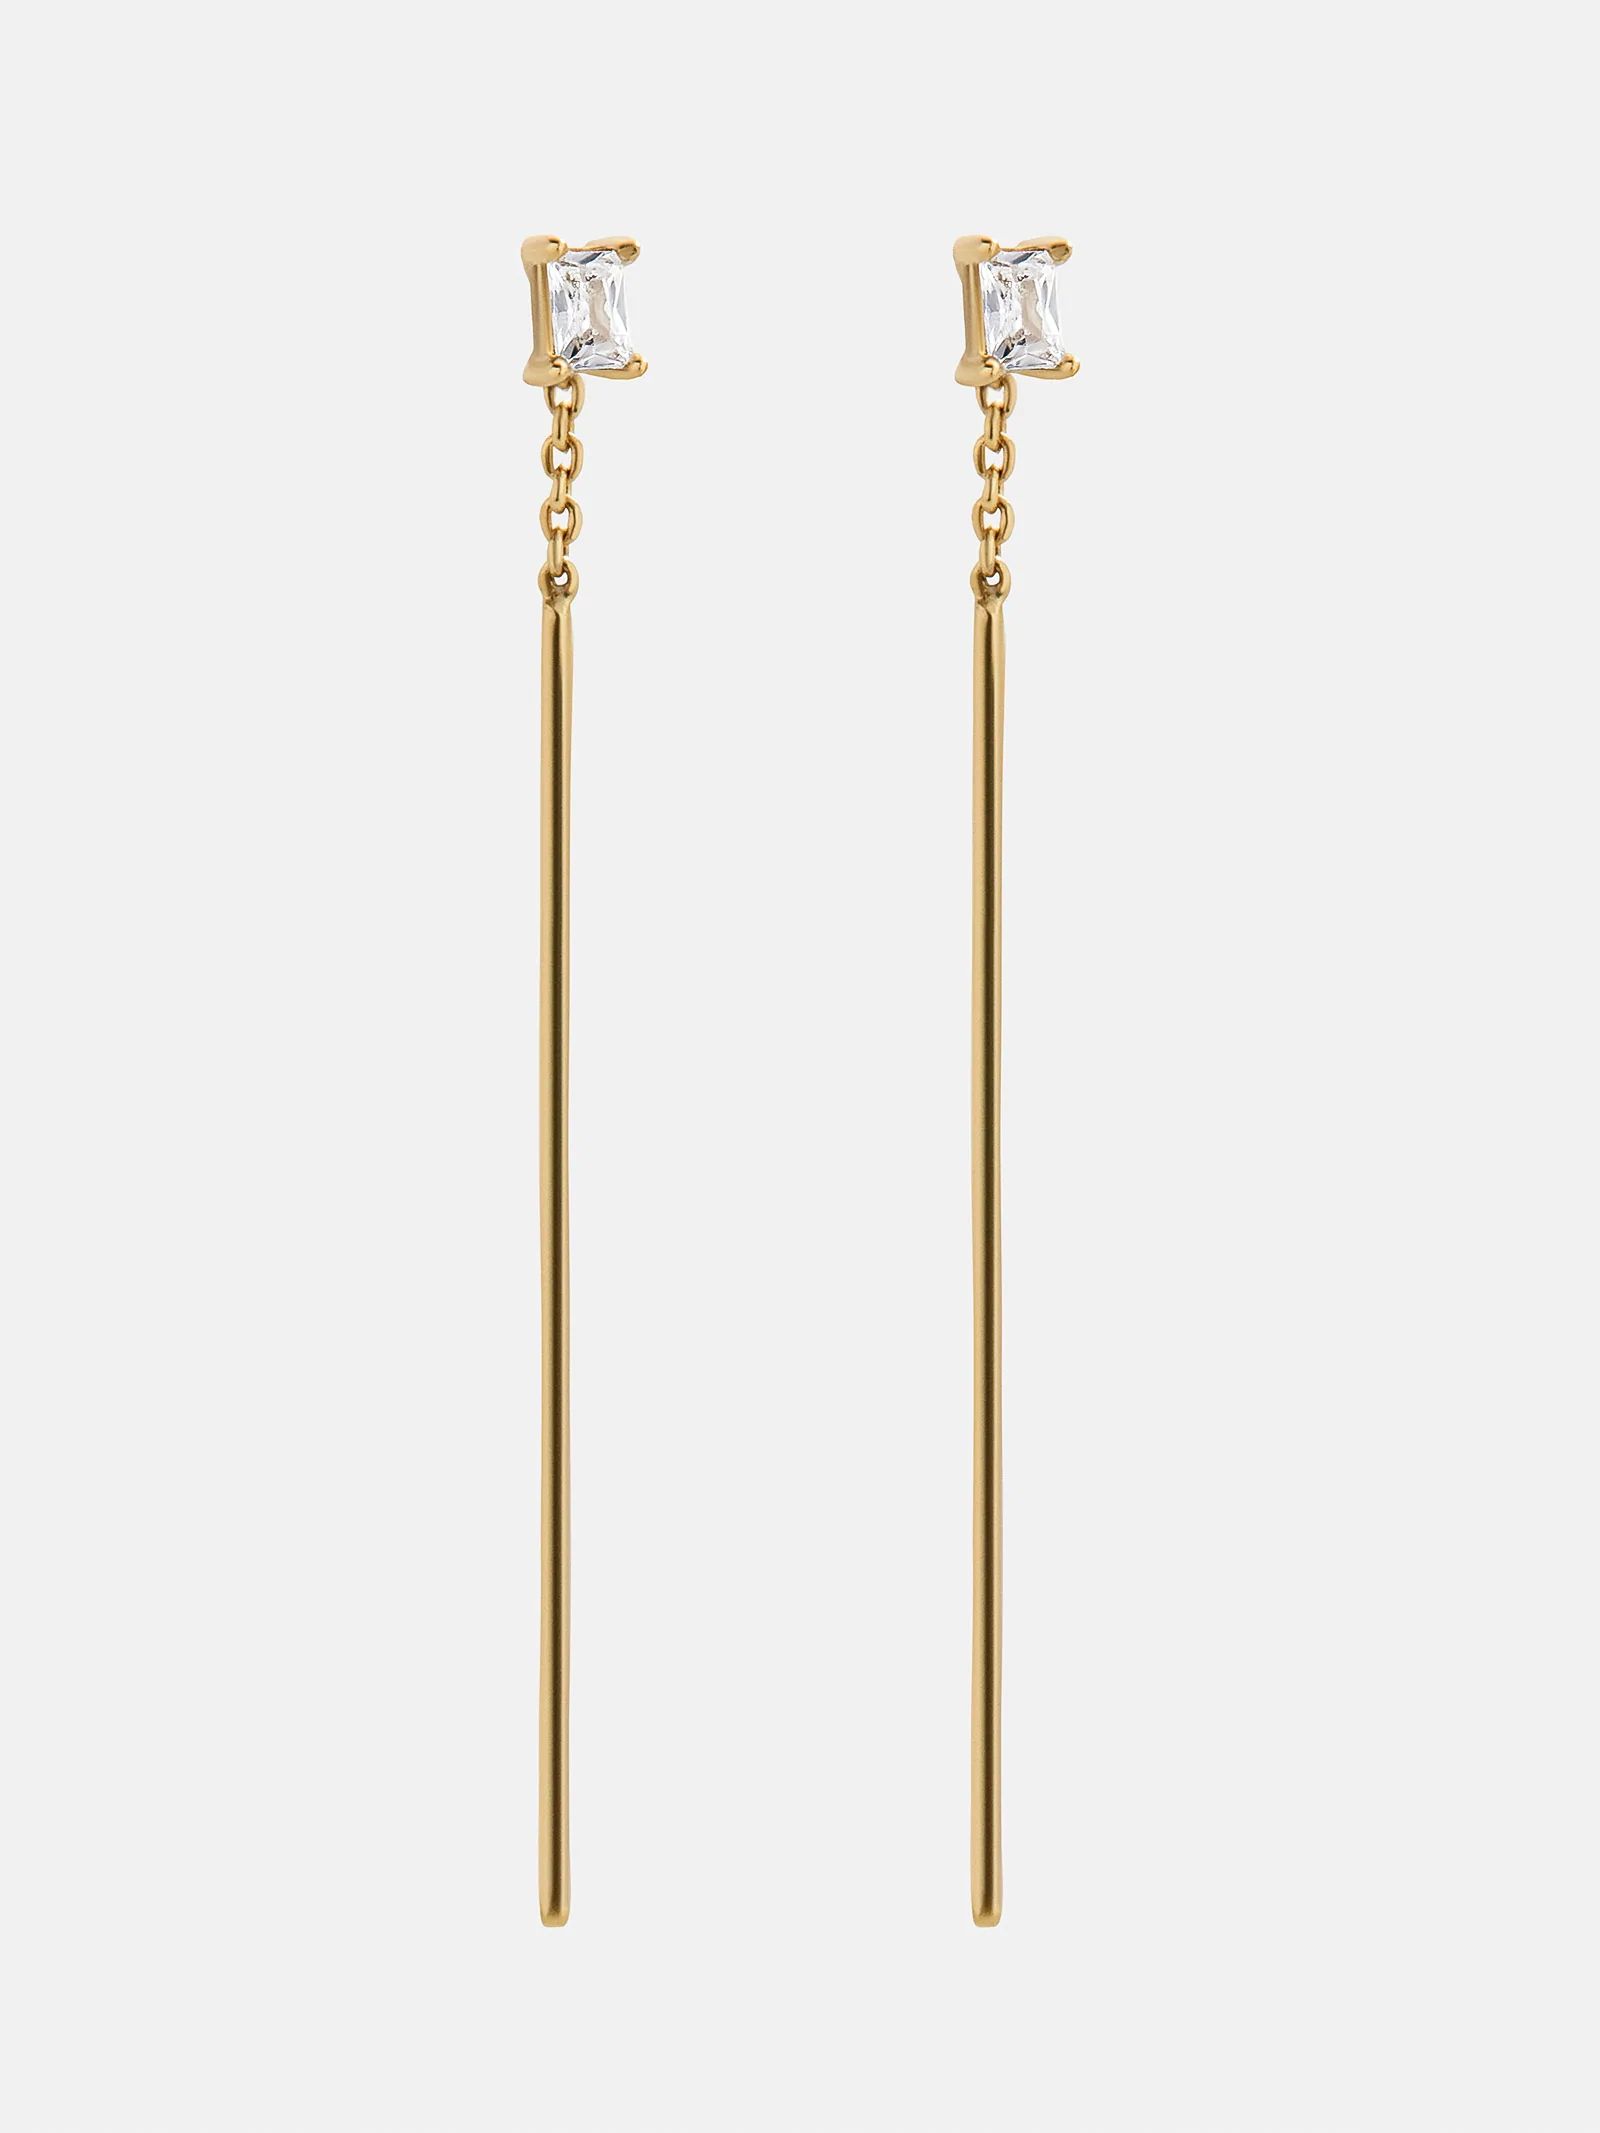 Alondra 18K Gold Earrings | BaubleBar (US)